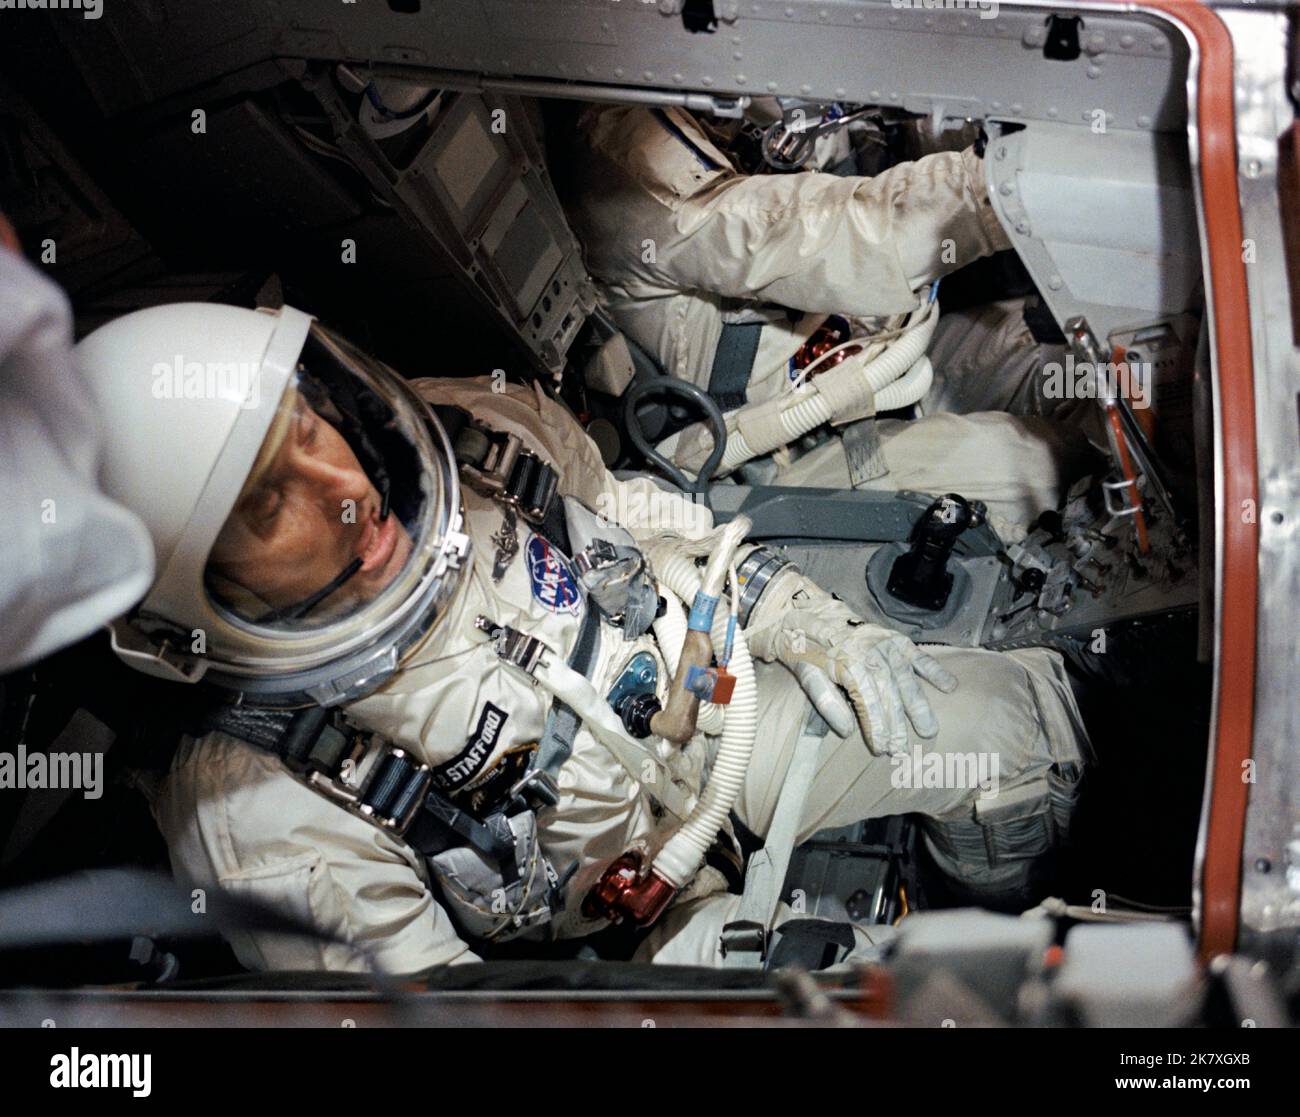 El astronauta Thomas P. Stafford, piloto, es visto en la nave espacial Gemini VI en la Sala Blanca sobre Pad 19 antes del cierre de las escotillas durante la cuenta regresiva previa al lanzamiento. Foto de stock